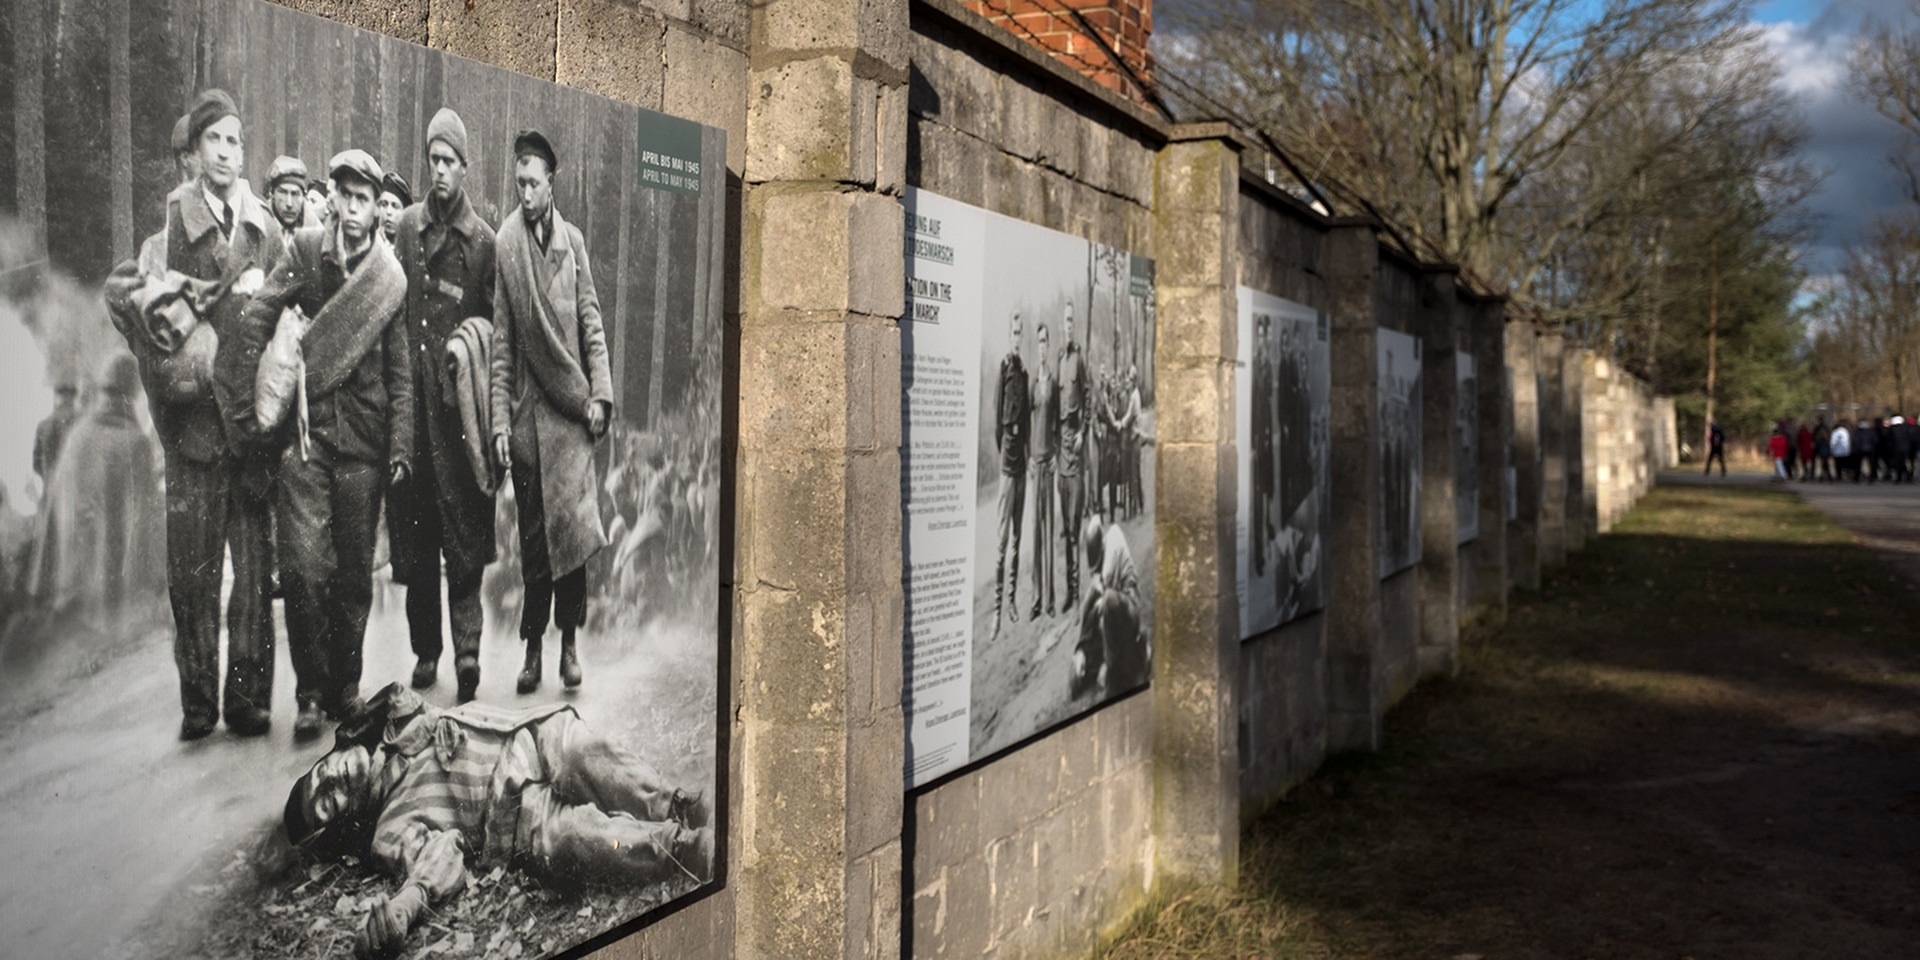 Mauer des ehemaligen Konzentrationslagers Sachsenhausen mit historischen Bildern und Informationstafeln an der Wand.